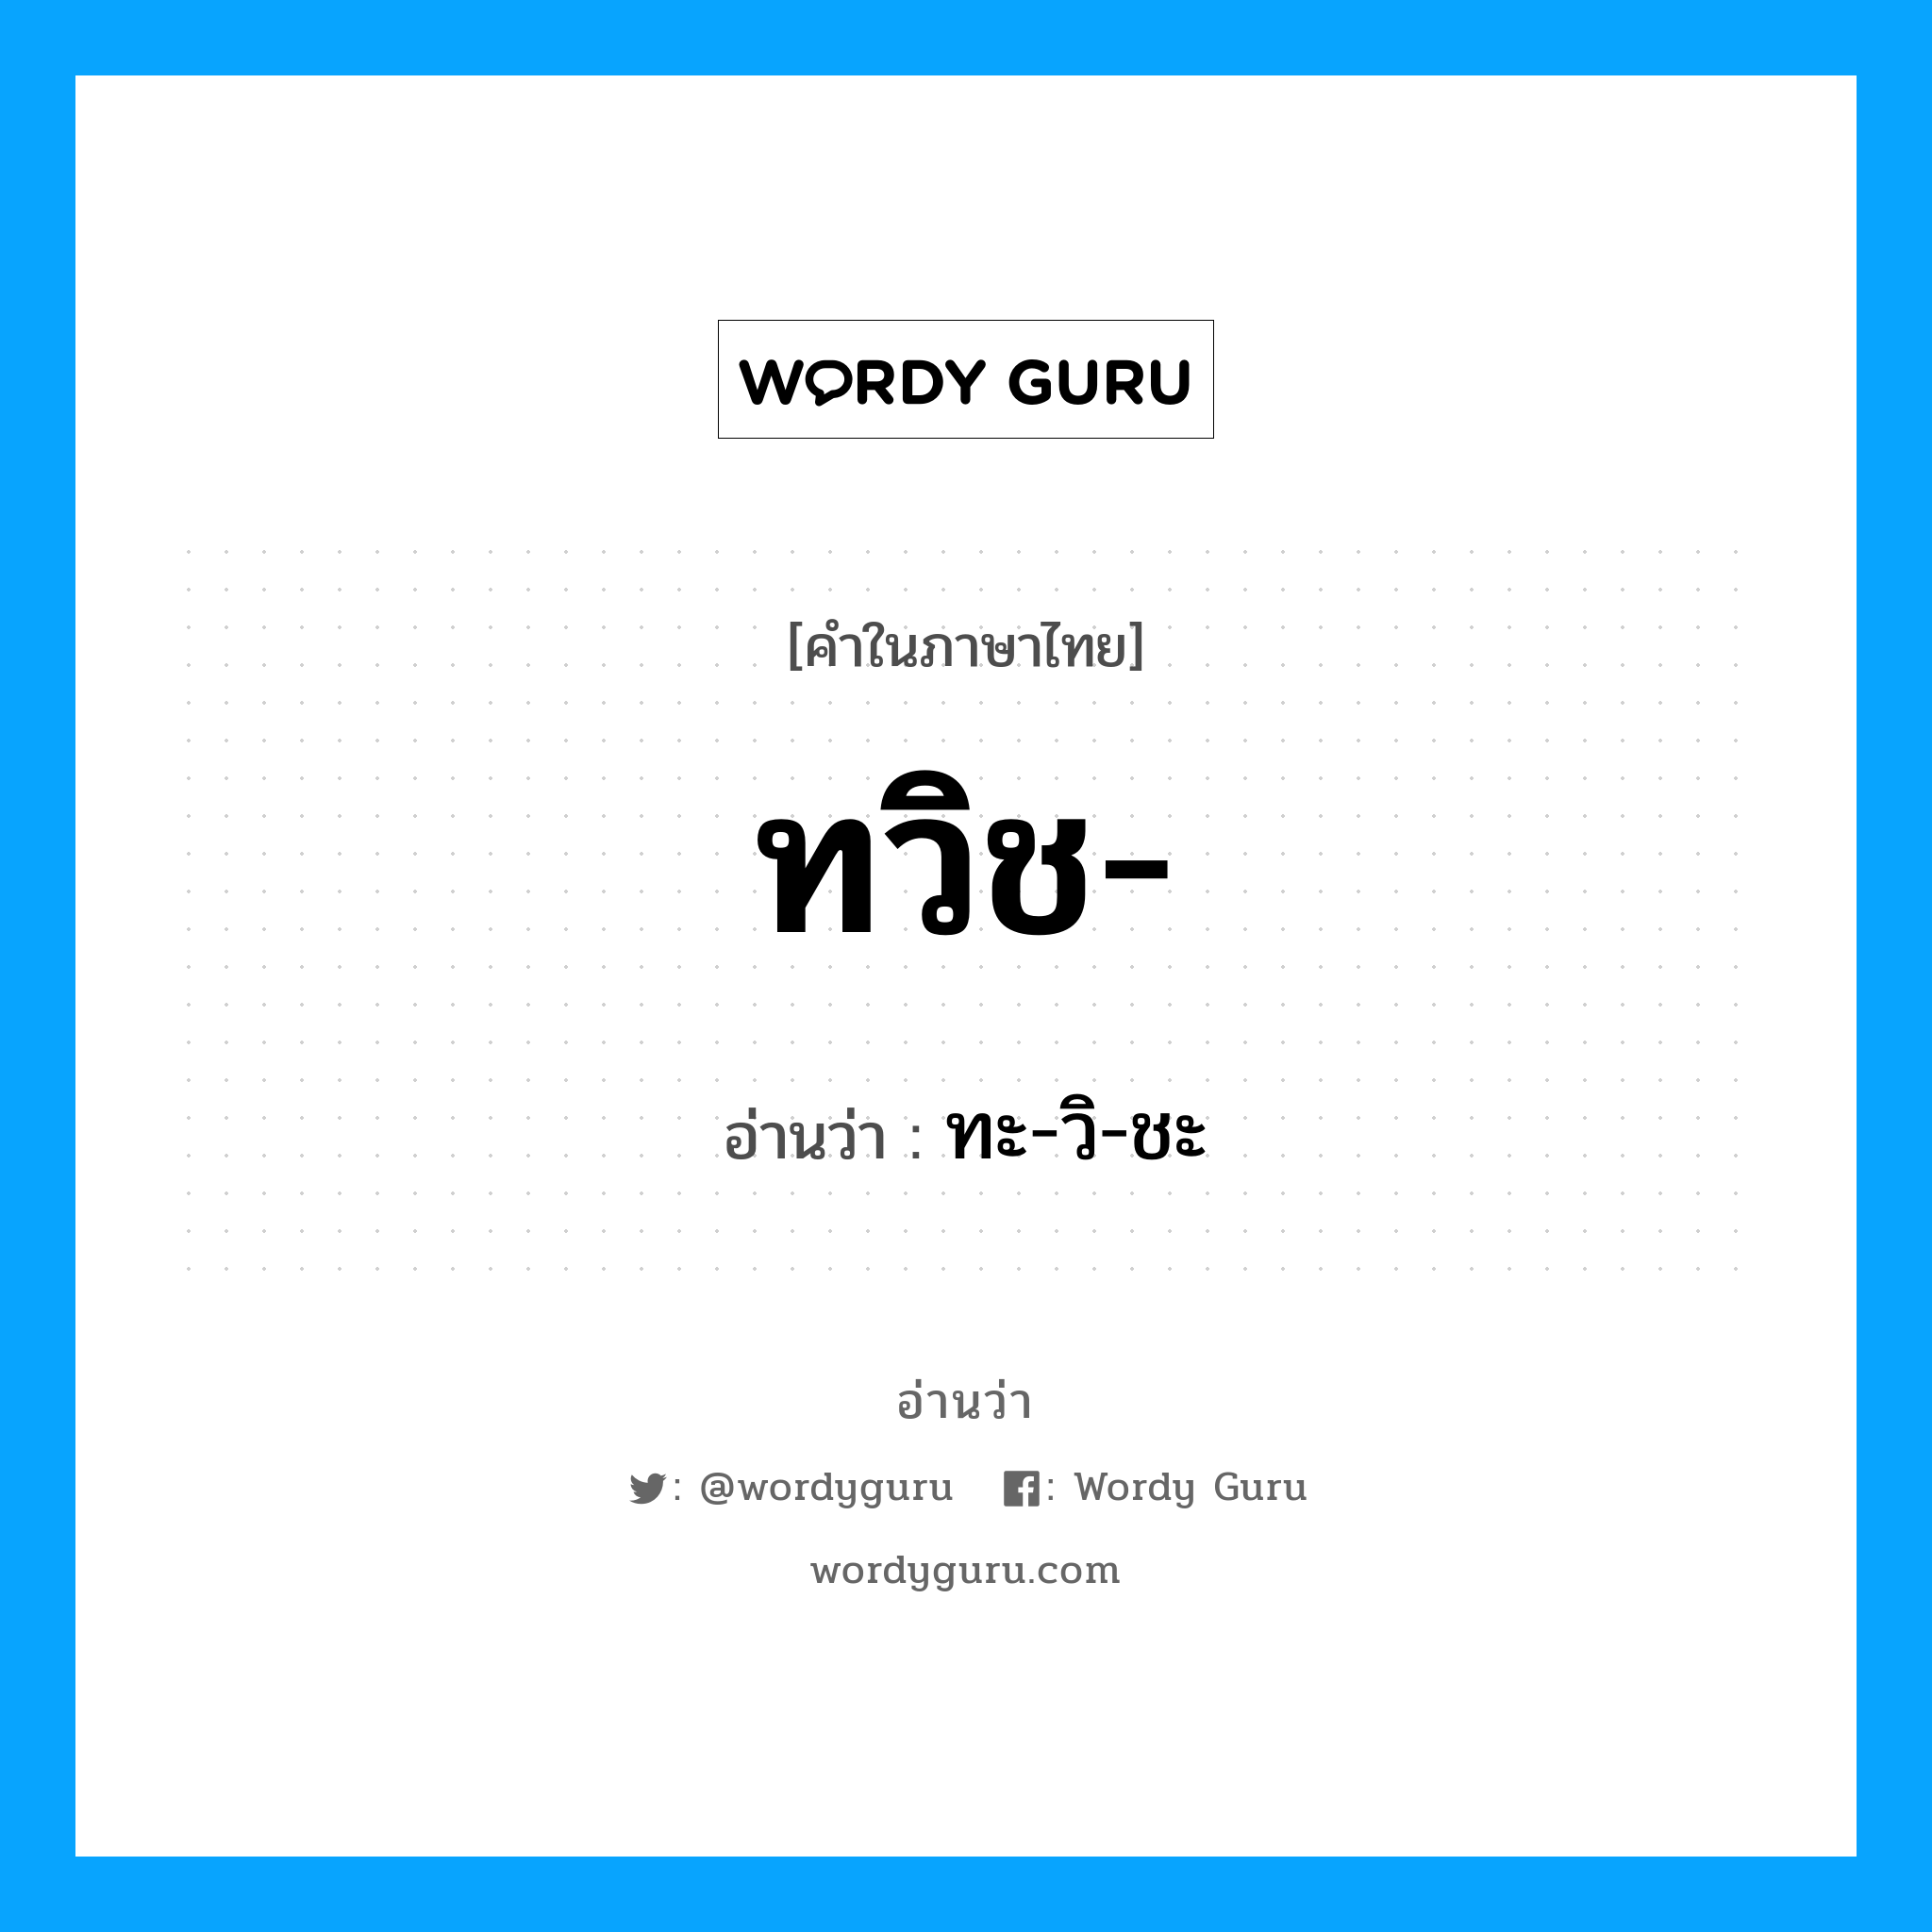 ทะ-วิ-ชะ เป็นคำอ่านของคำไหน?, คำในภาษาไทย ทะ-วิ-ชะ อ่านว่า ทวิช-